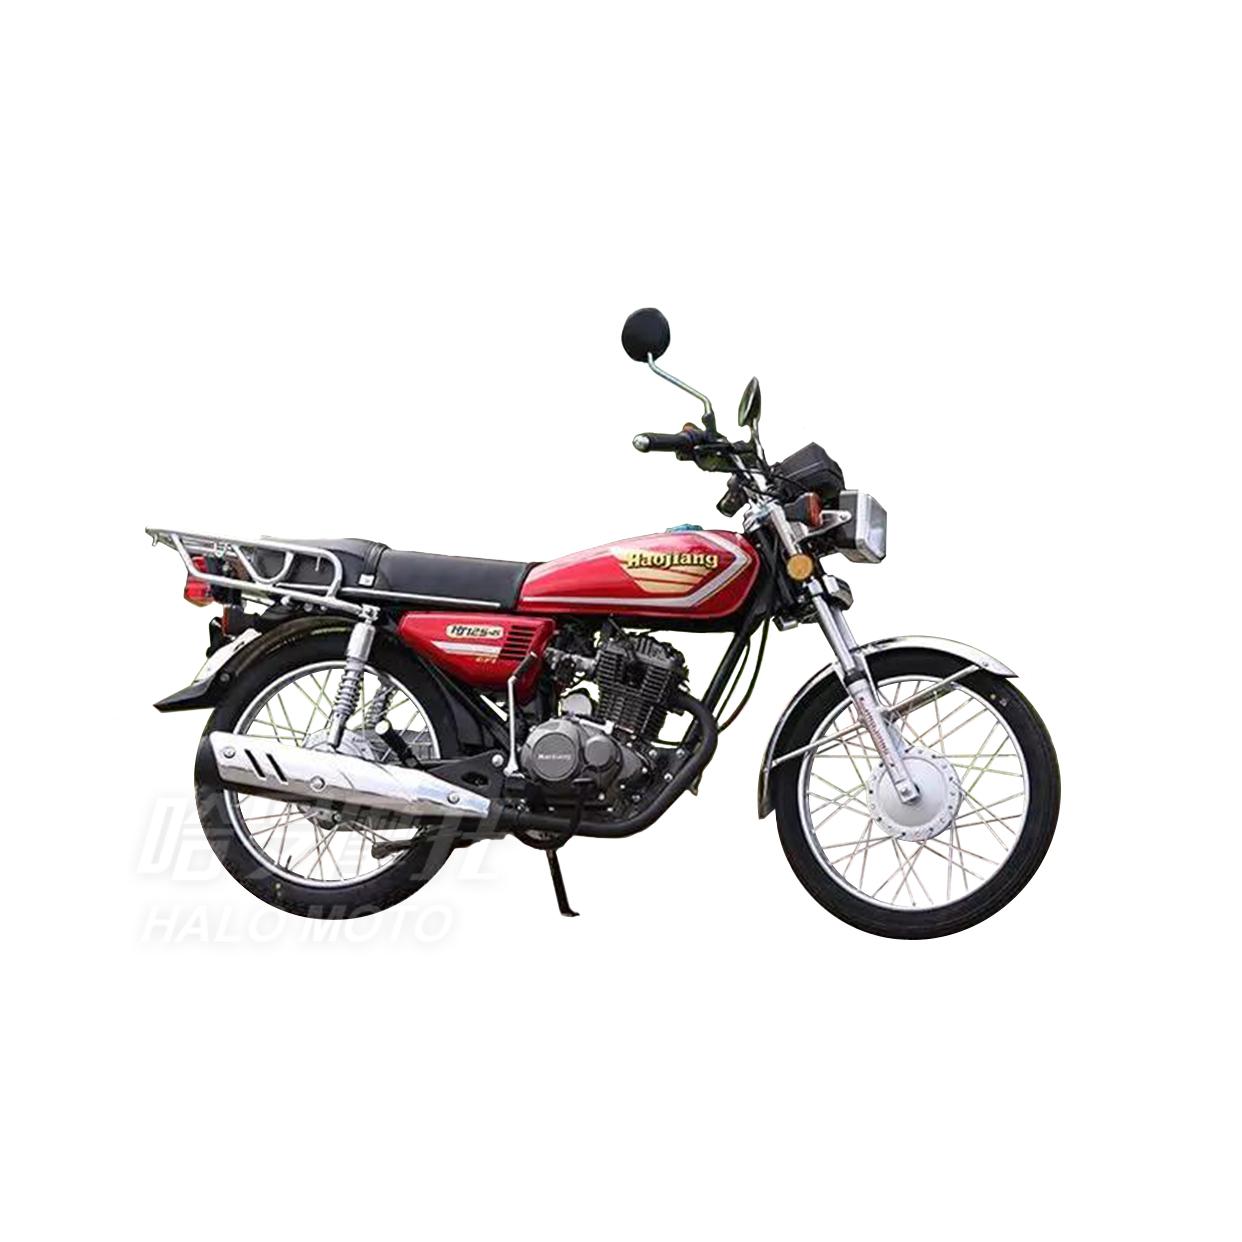 豪江摩托车,HJ250-C报价及图片-摩托范-哈罗摩托车官网